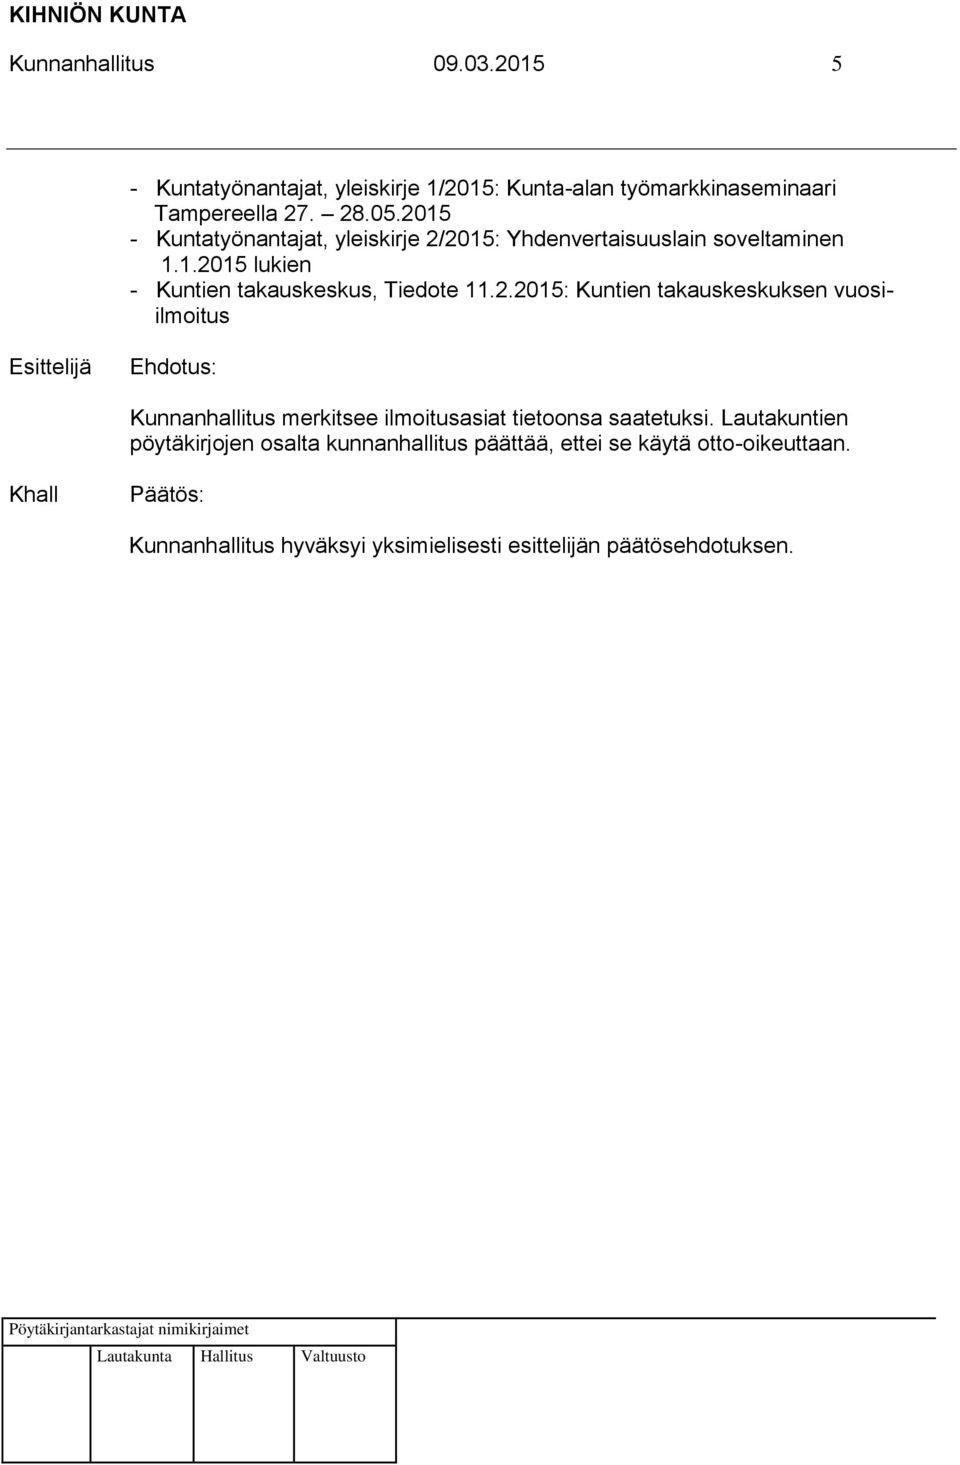 2015 - Kuntatyönantajat, yleiskirje 2/2015: Yhdenvertaisuuslain soveltaminen 1.1.2015 lukien - Kuntien takauskeskus, Tiedote 11.